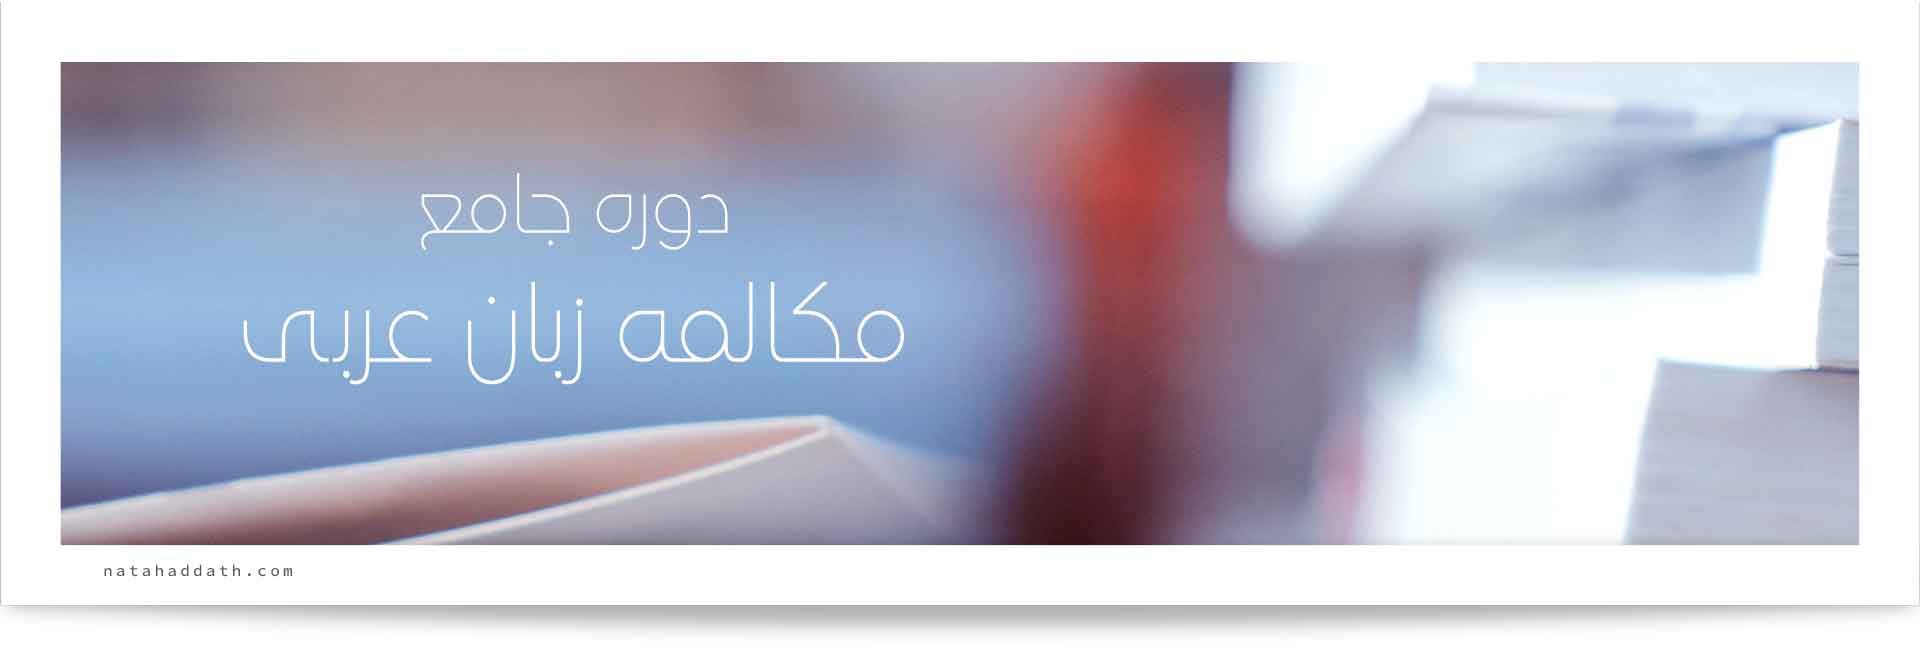 آموزش جامع مکالمه زبان عربی